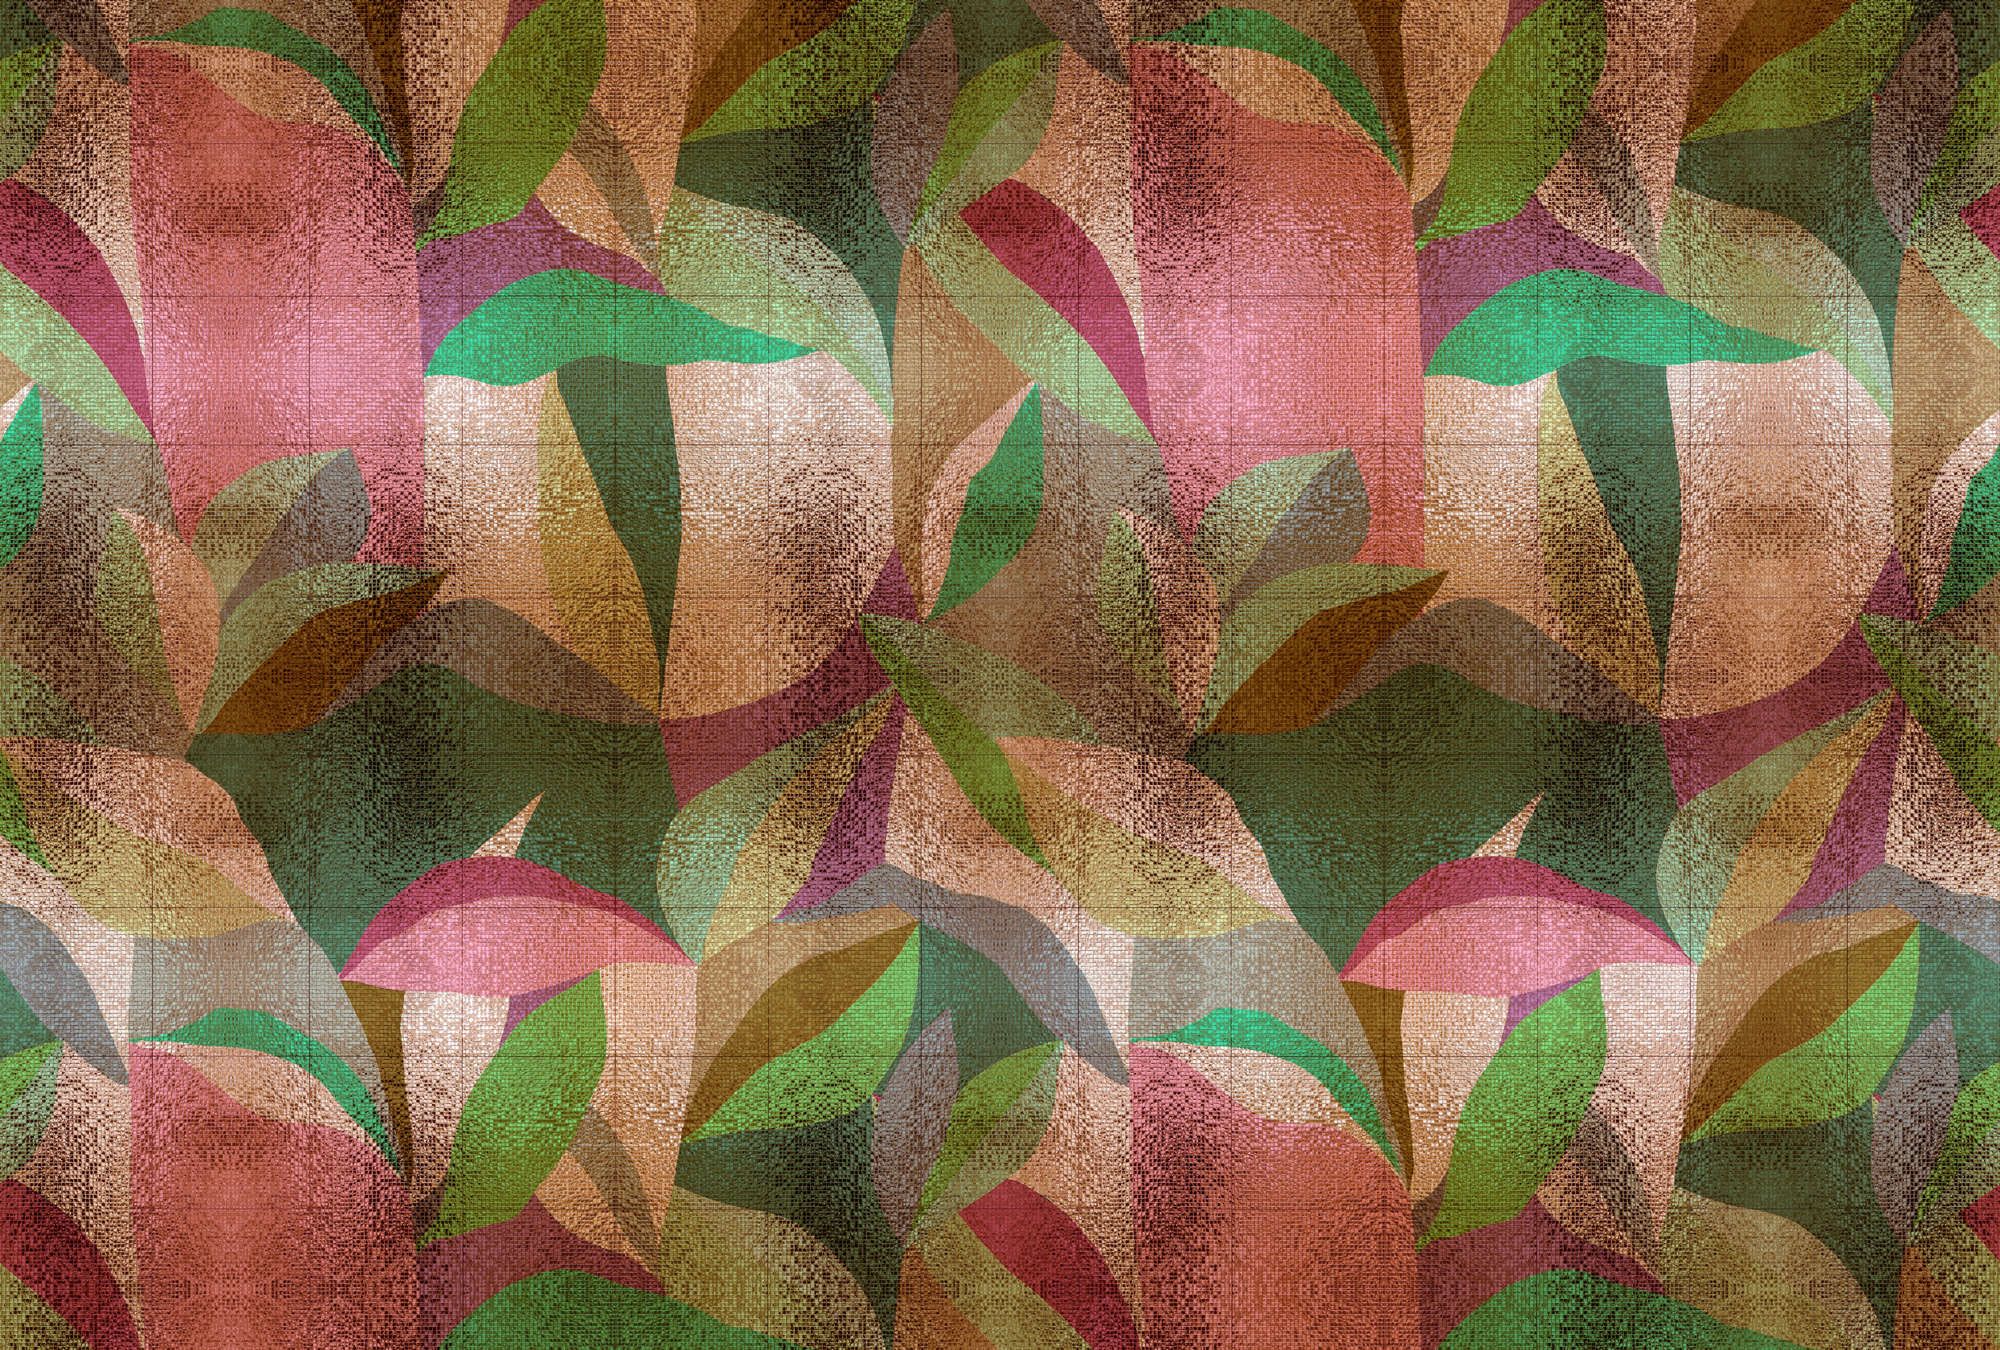             Fotomurali »grandezza« - Disegno astratto di foglie colorate con struttura a mosaico - Materiali non tessuto leggermente strutturato
        